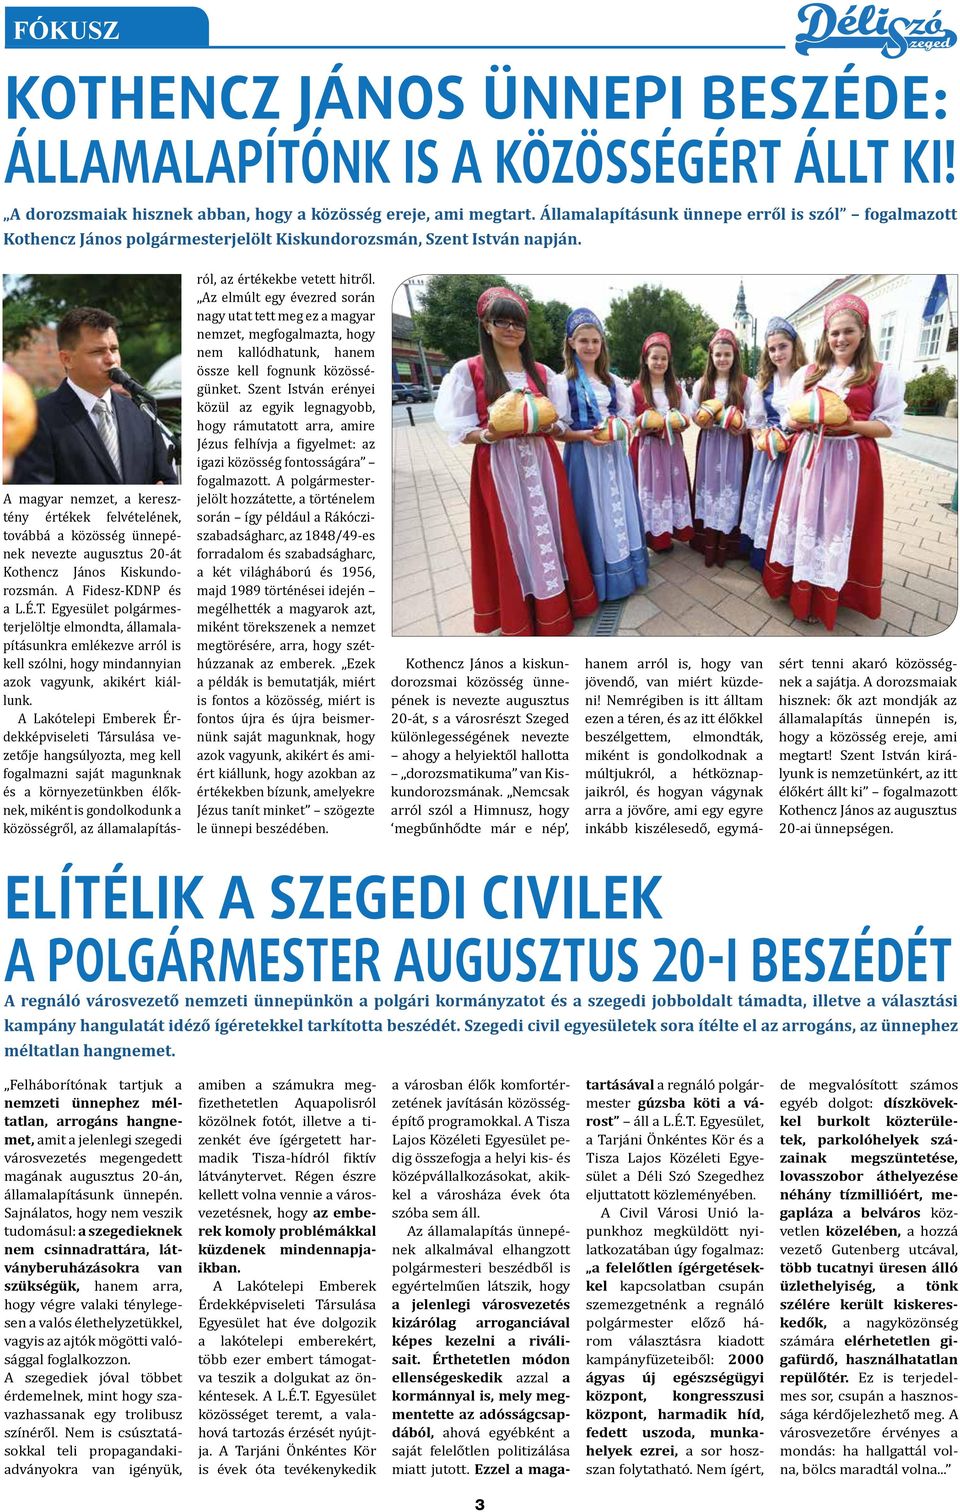 A magyar nemzet, a keresztény értékek felvételének, továbbá a közösség ünnepének nevezte augusztus 20-át Kothencz János Kiskundorozsmán. A Fidesz-KDNP és a L.É.T.